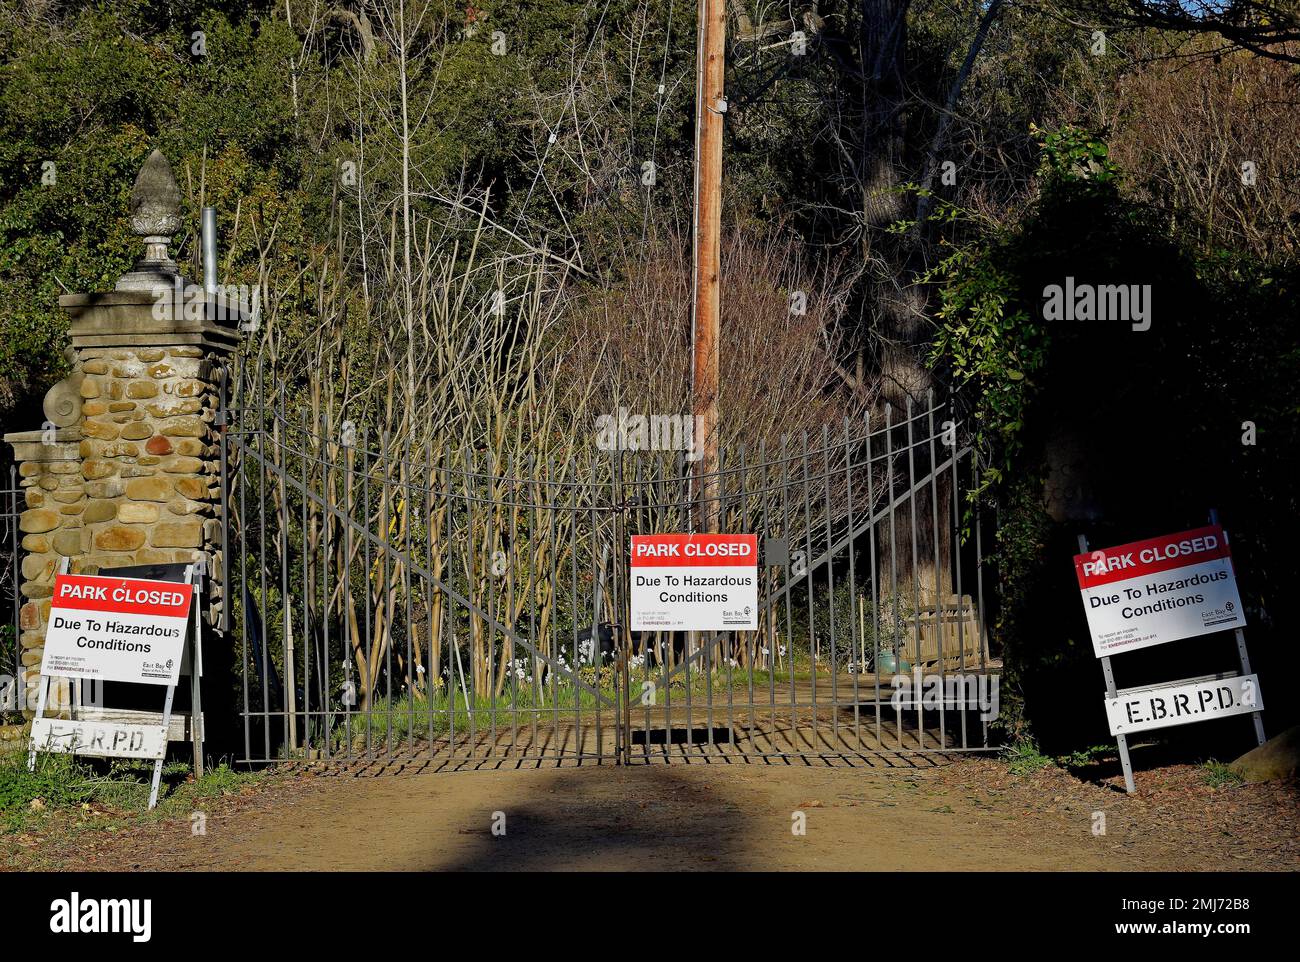 Parque cerrado debido a condiciones peligrosas señal en la entrada de Dry Creek Garden, Union City, California Foto de stock